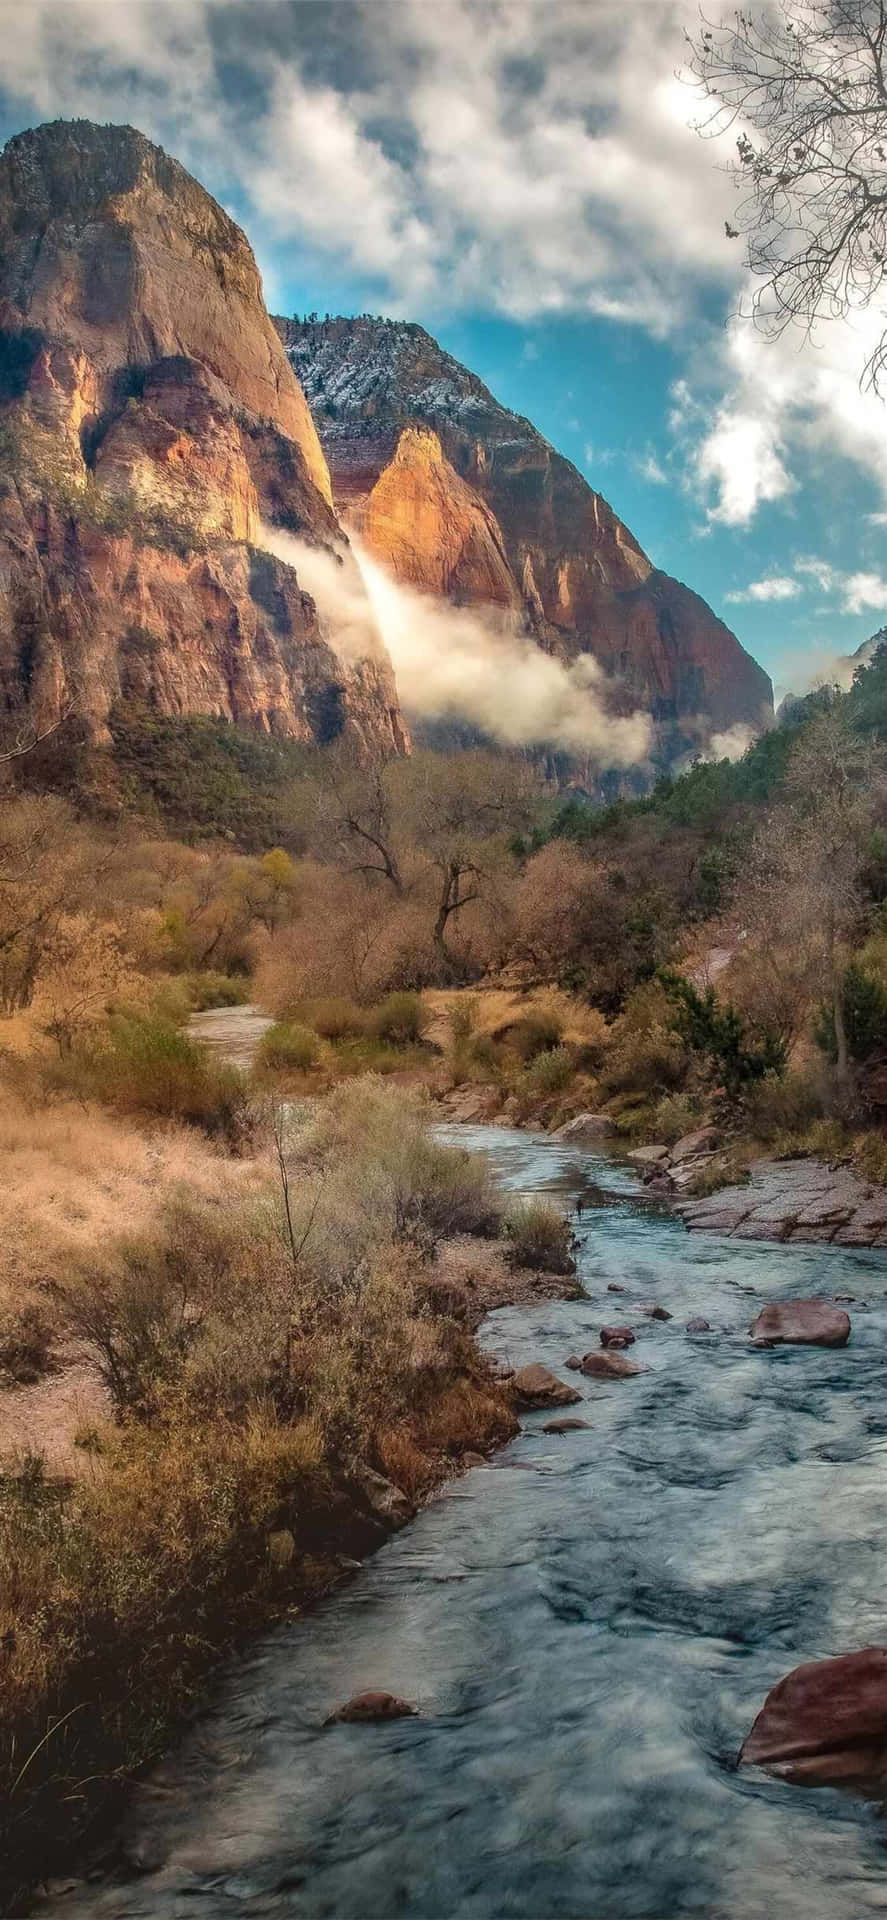 Majestic_ Mountain_ River_ View.jpg Wallpaper